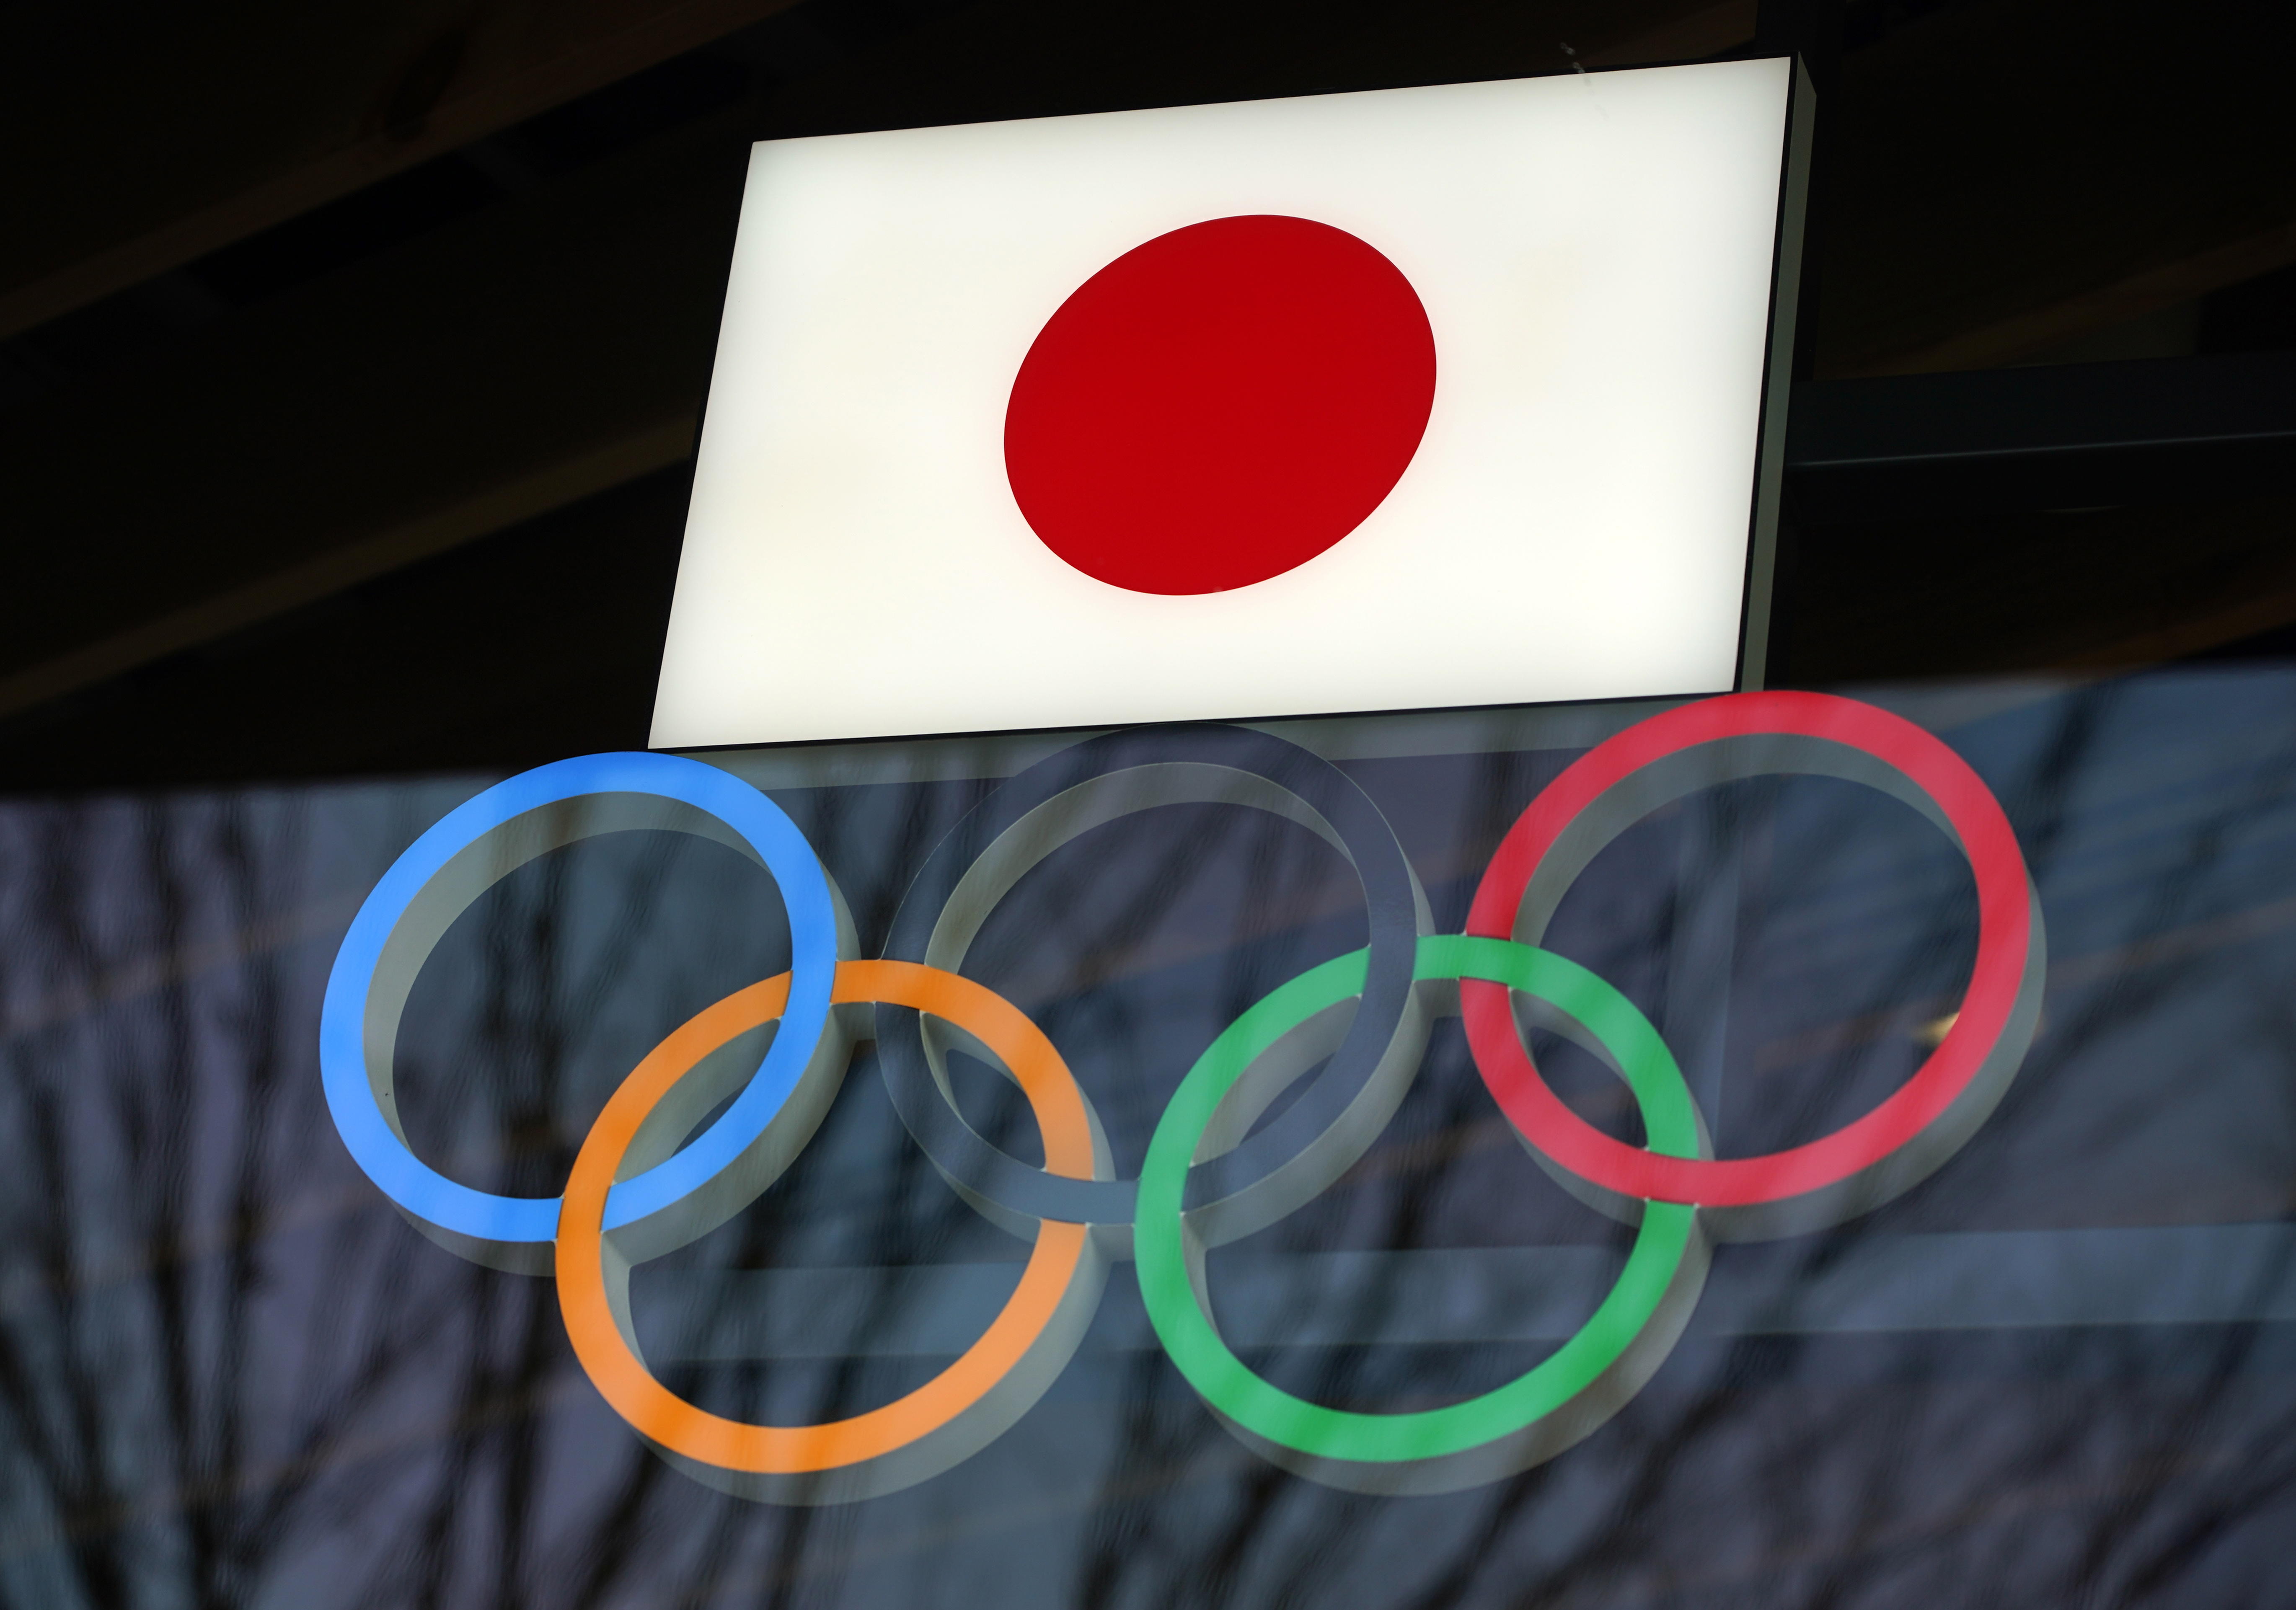 Los Juegos Olímpicos de Tokio fueron reprogramados para el 23 de julio y ahora podrían llevarse a cabo sin público. (Foto Prensa Libre: EFE)